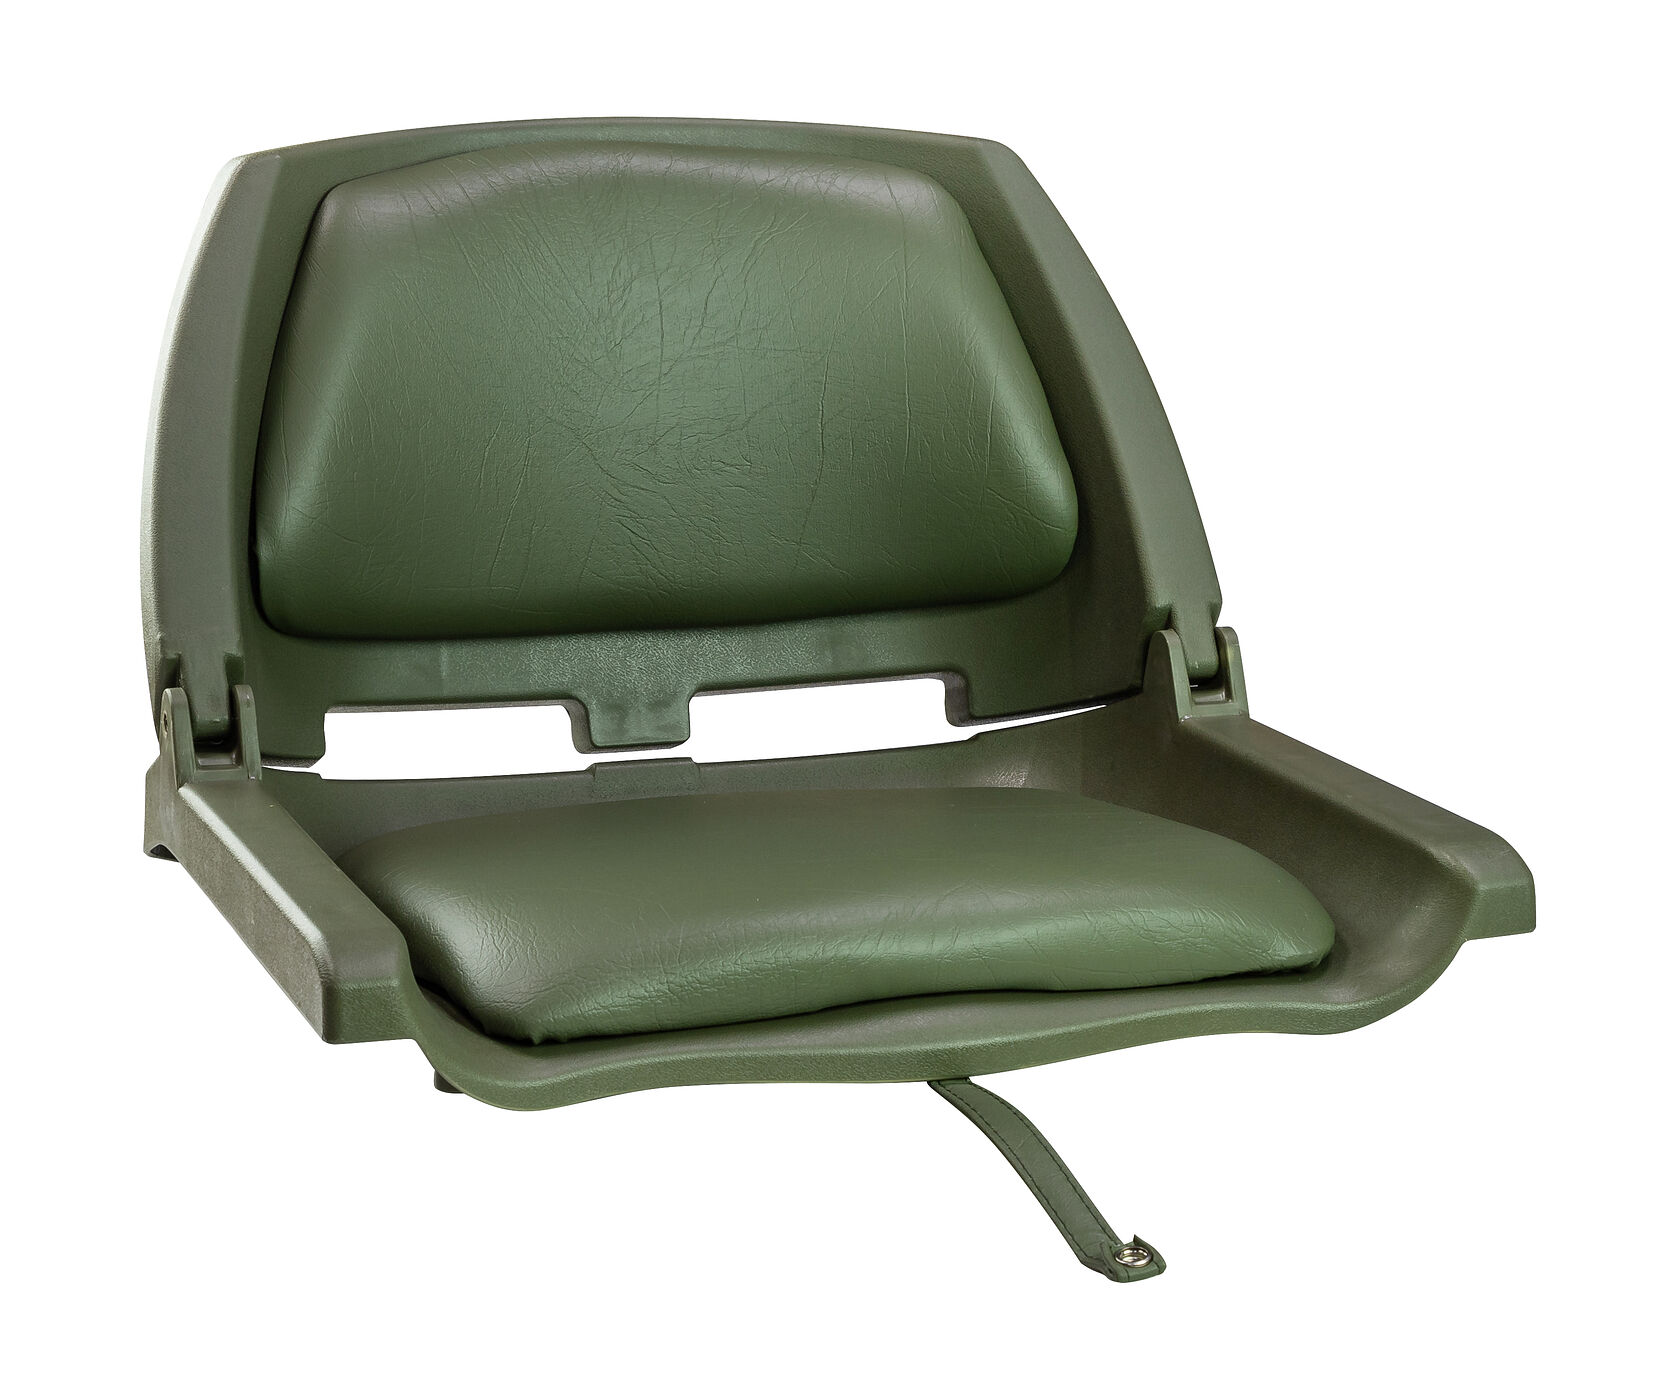 Кресло складное мягкое TRAVELER, цвет зеленый Springfield 1061105C